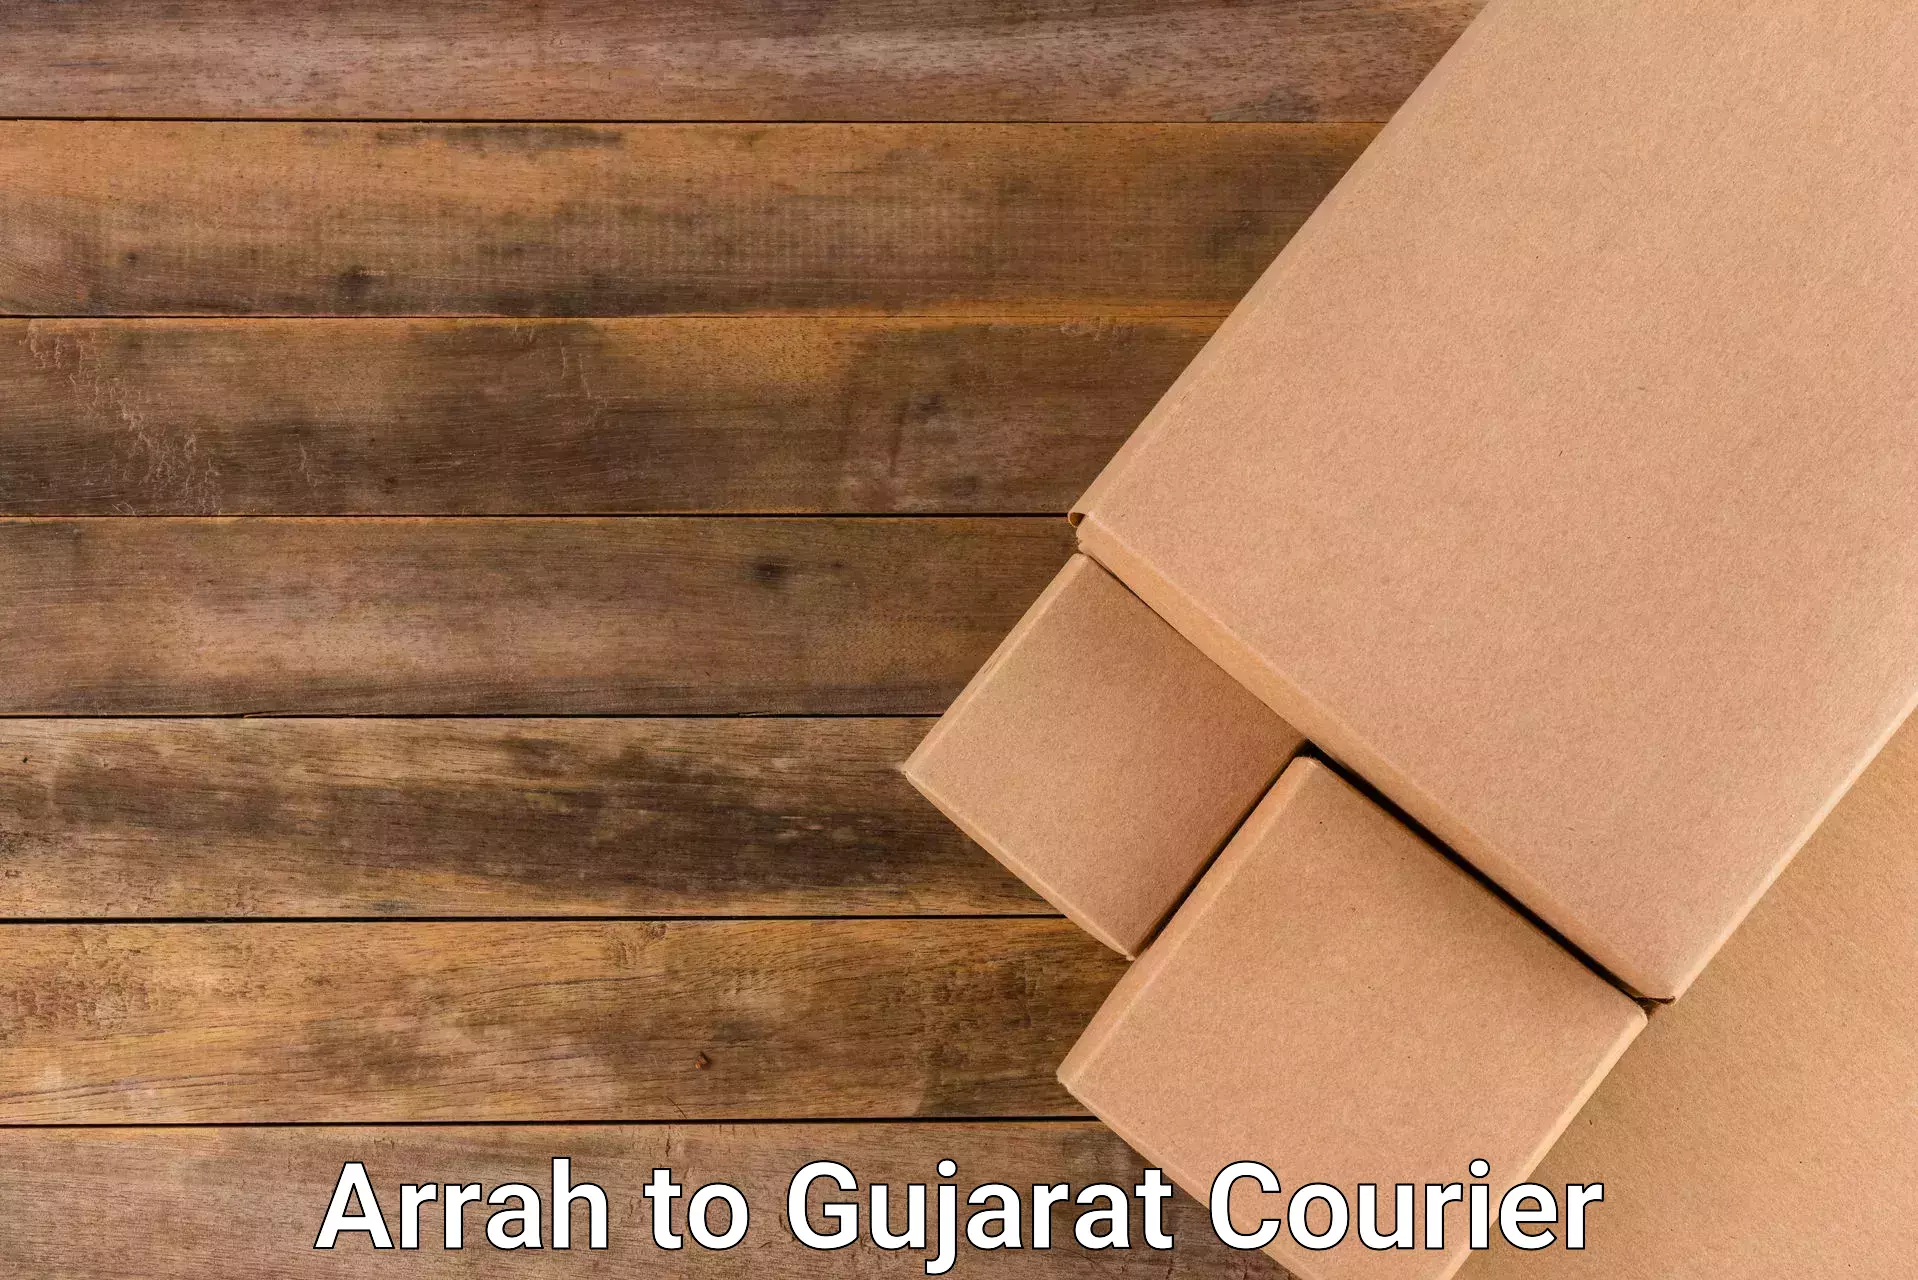 Flexible parcel services Arrah to Surat